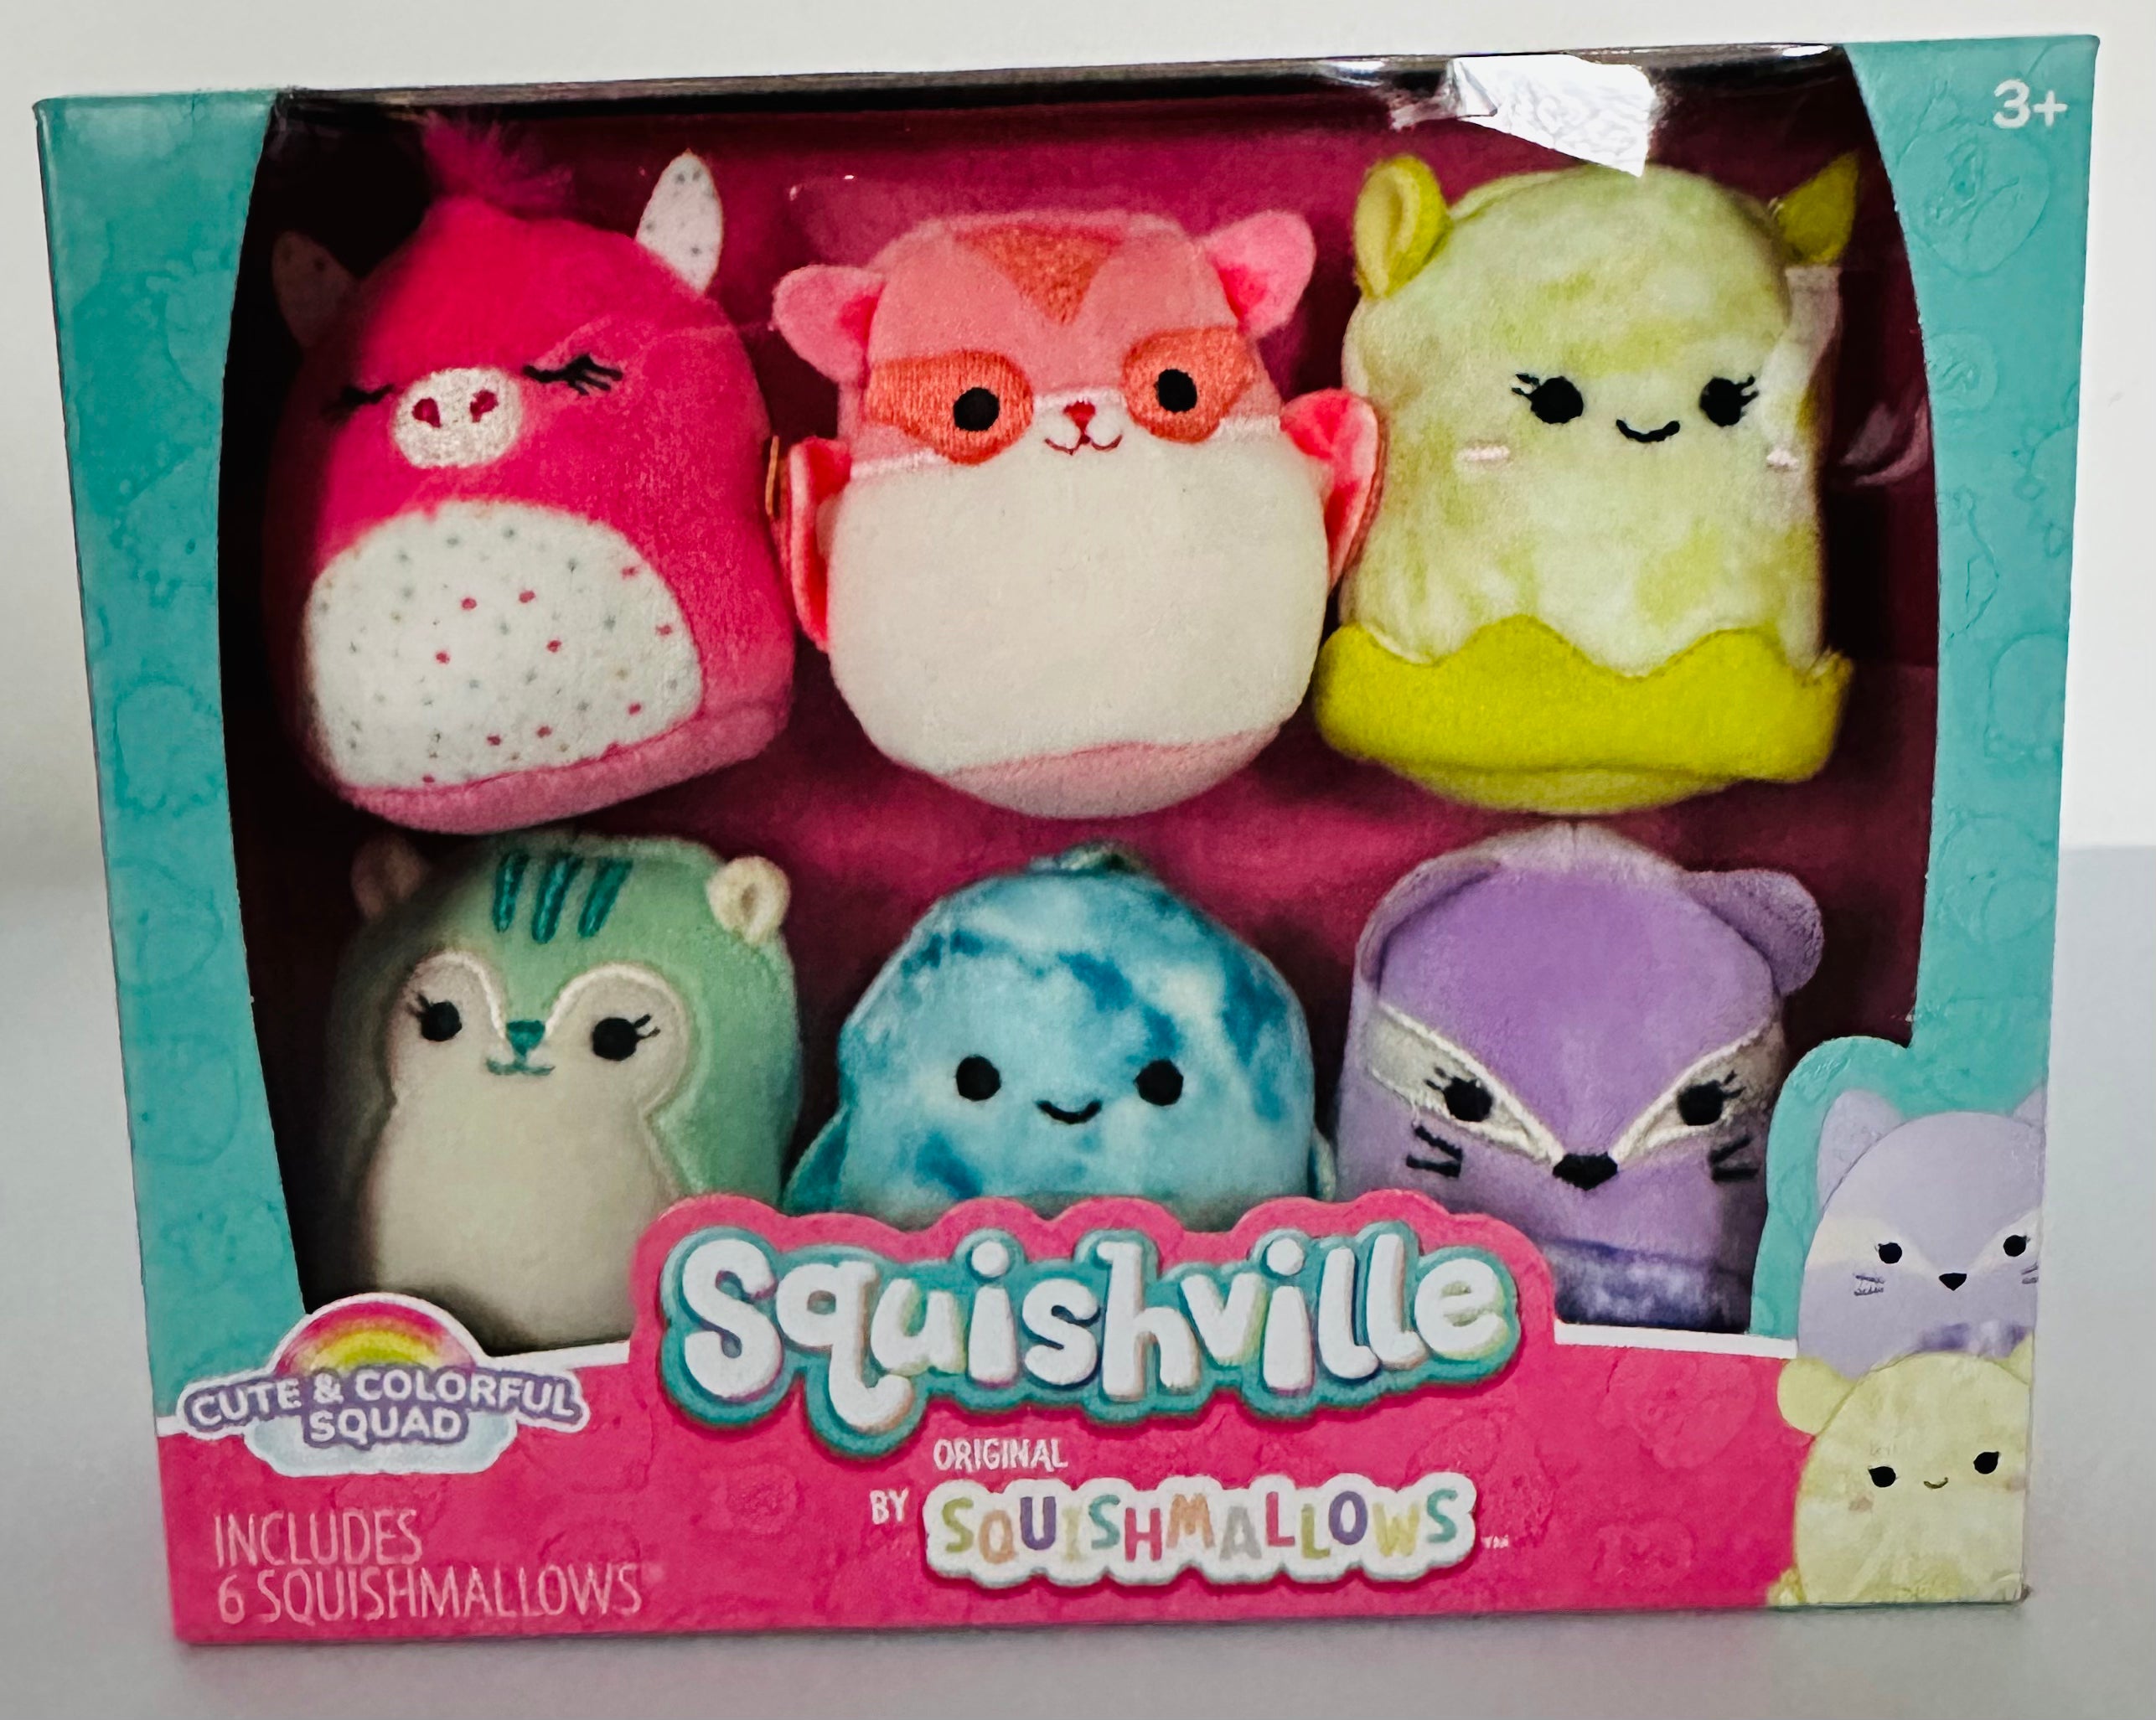 3 Squishville Mini Squishmallow Plush Toy